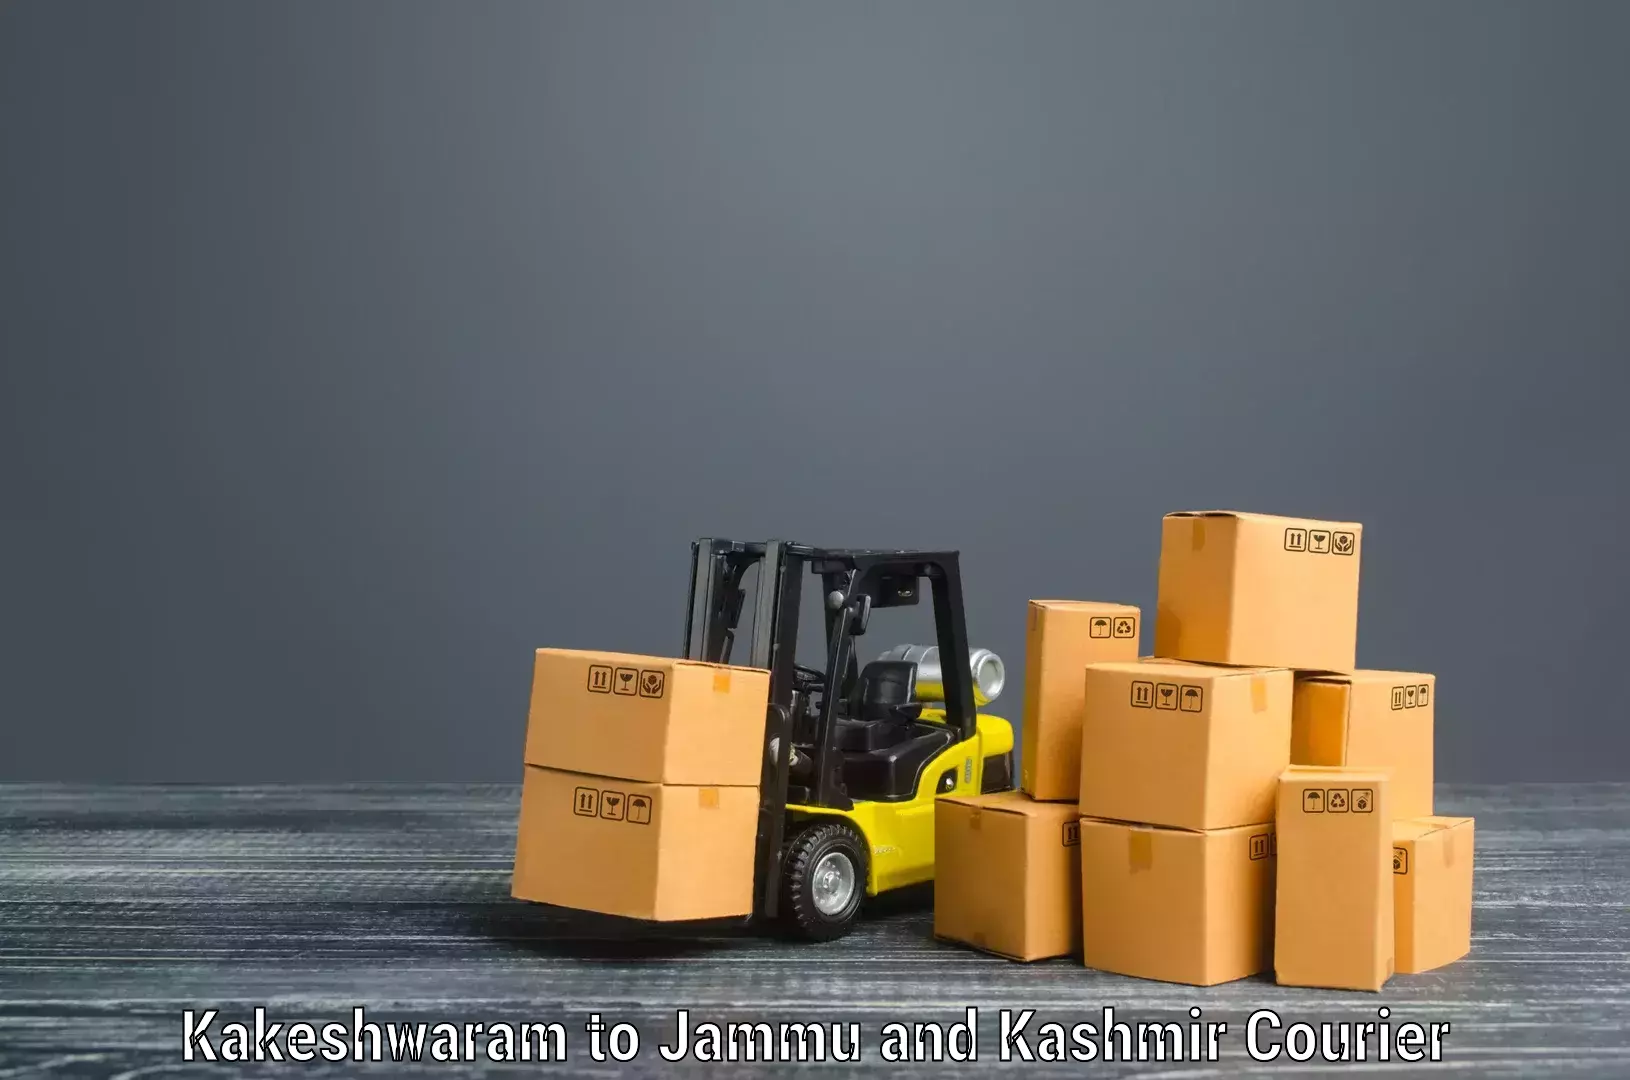 Furniture moving experts Kakeshwaram to Leh